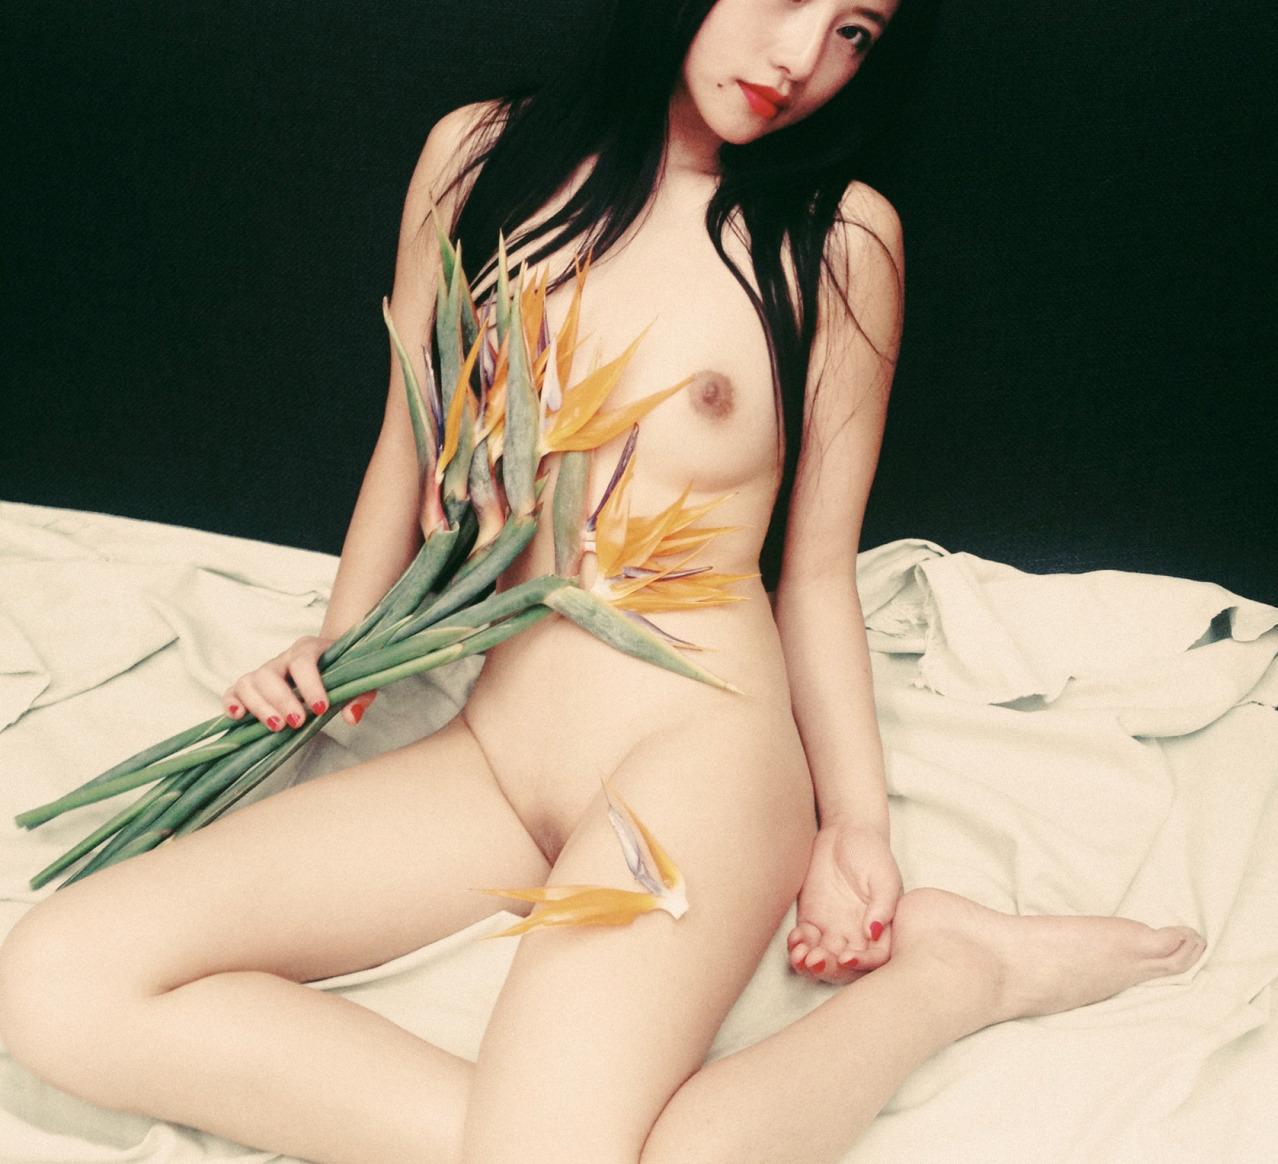 Xu qing nude - 🧡 Goddes 215 - Xtapo - Sexy Girl Photos.